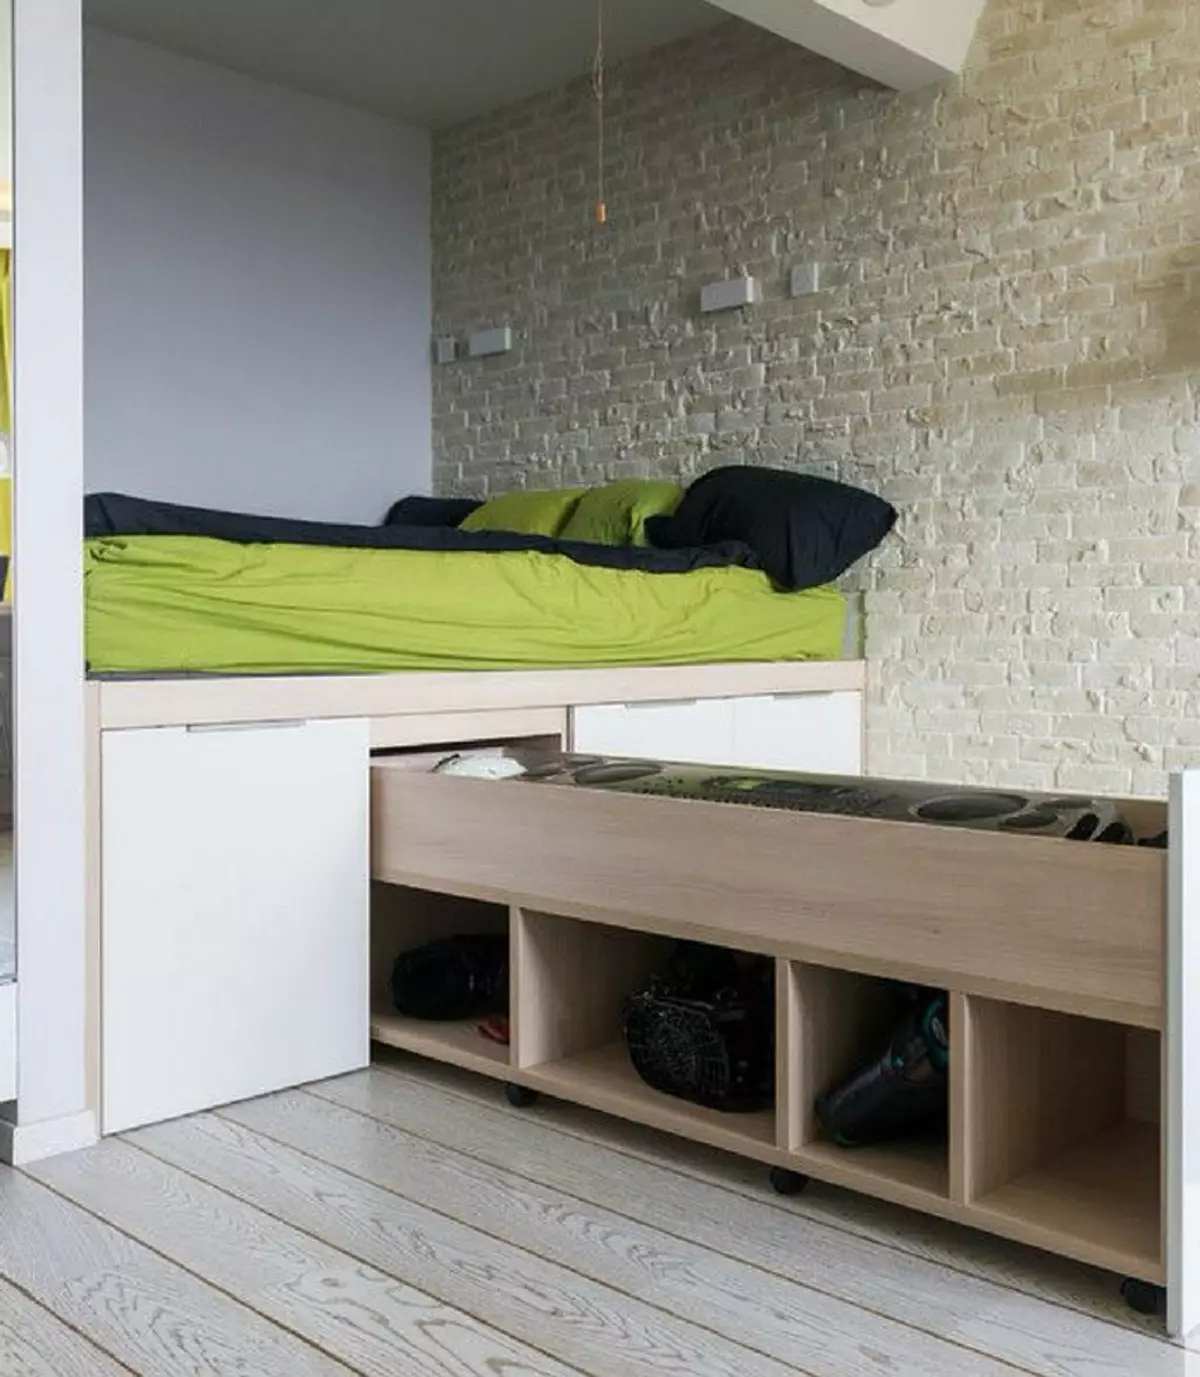 تصميم الفكرة بيديوم السرير للشقة الصغيرة